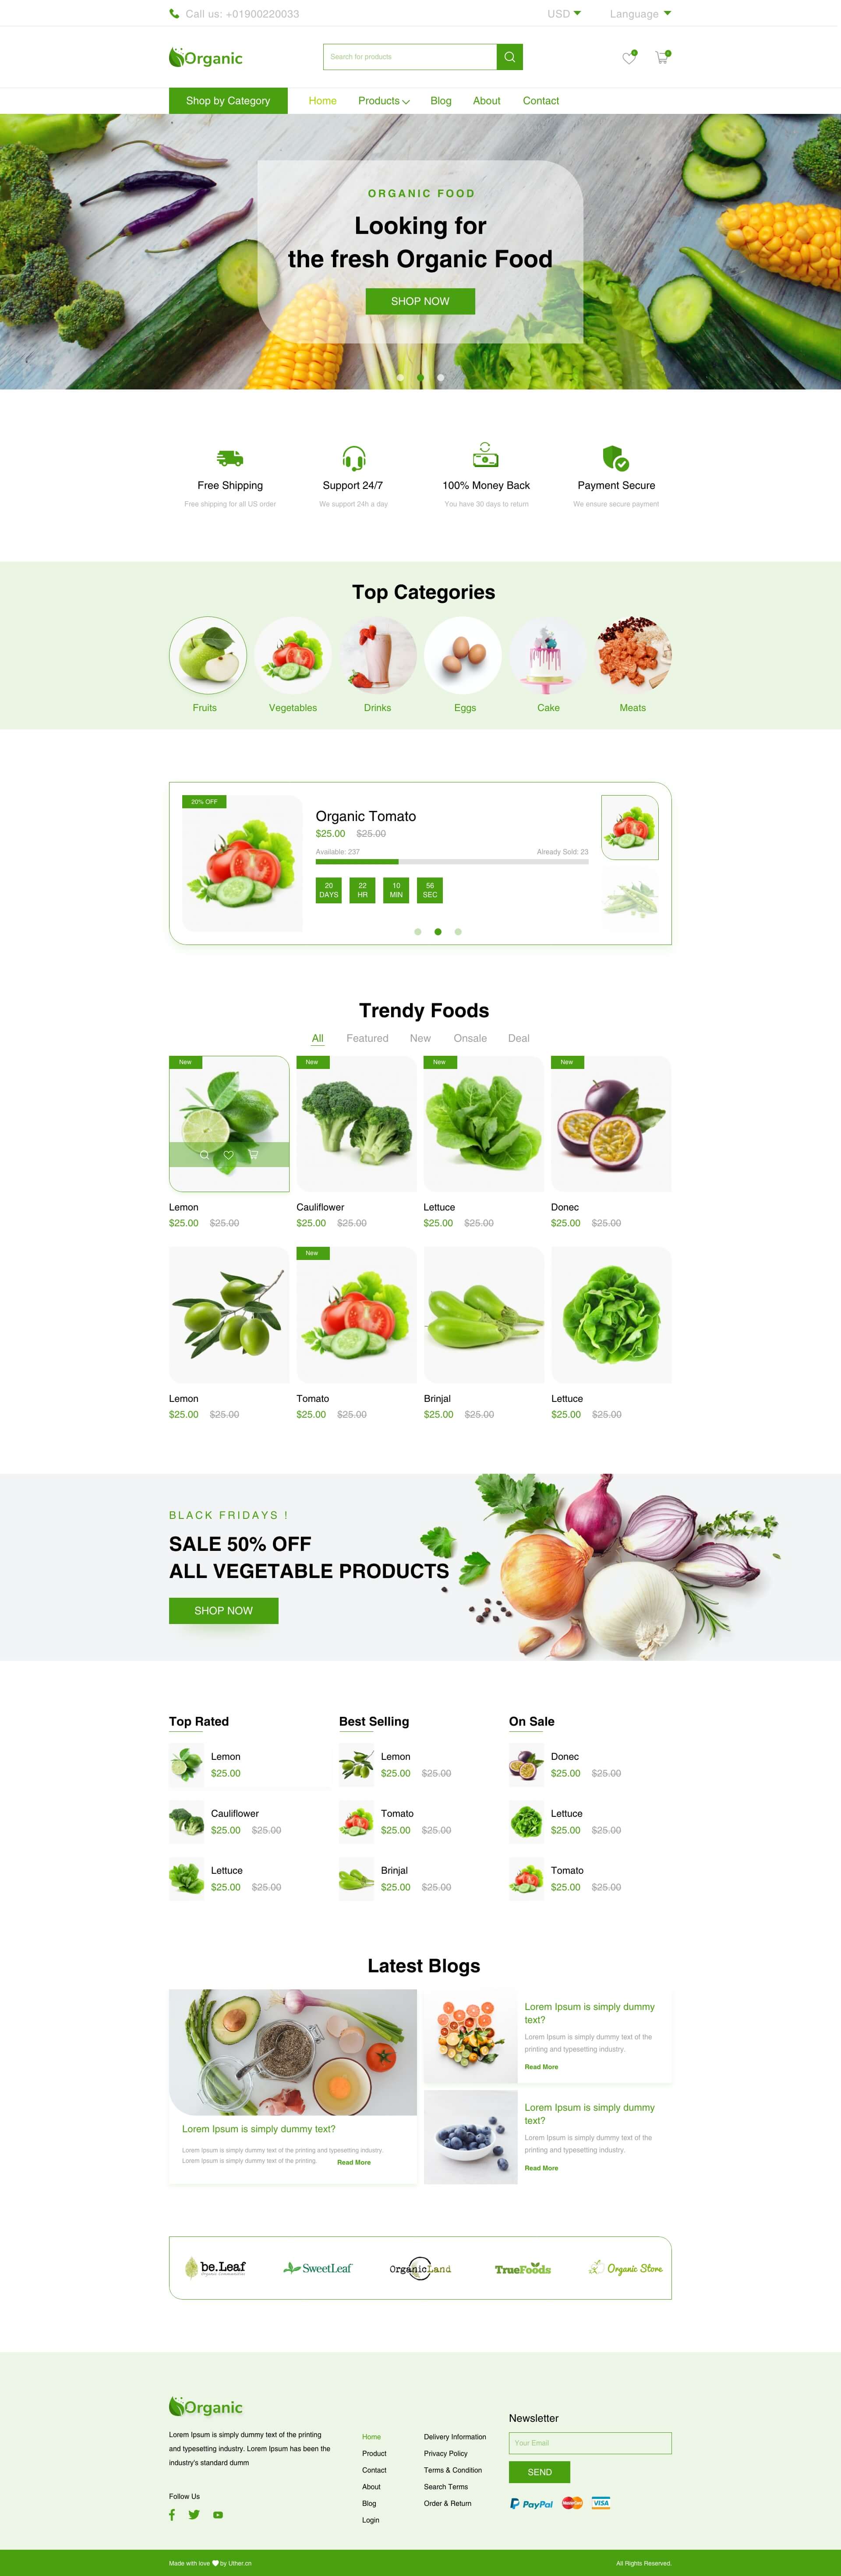 绿色系有机食品网站首页落地页WEB UI界面设计 .xd素材